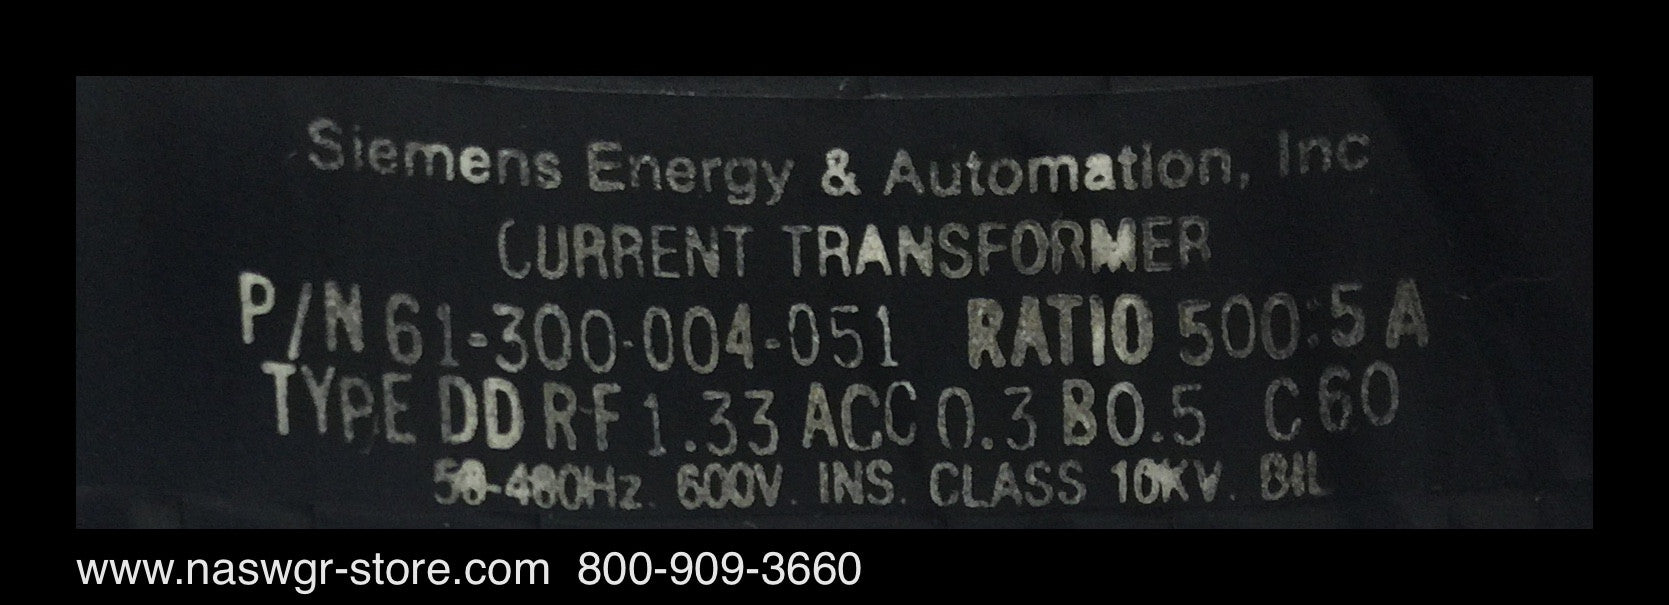 Siemens 61-300-004-051 Current Transformer ~ 500:5